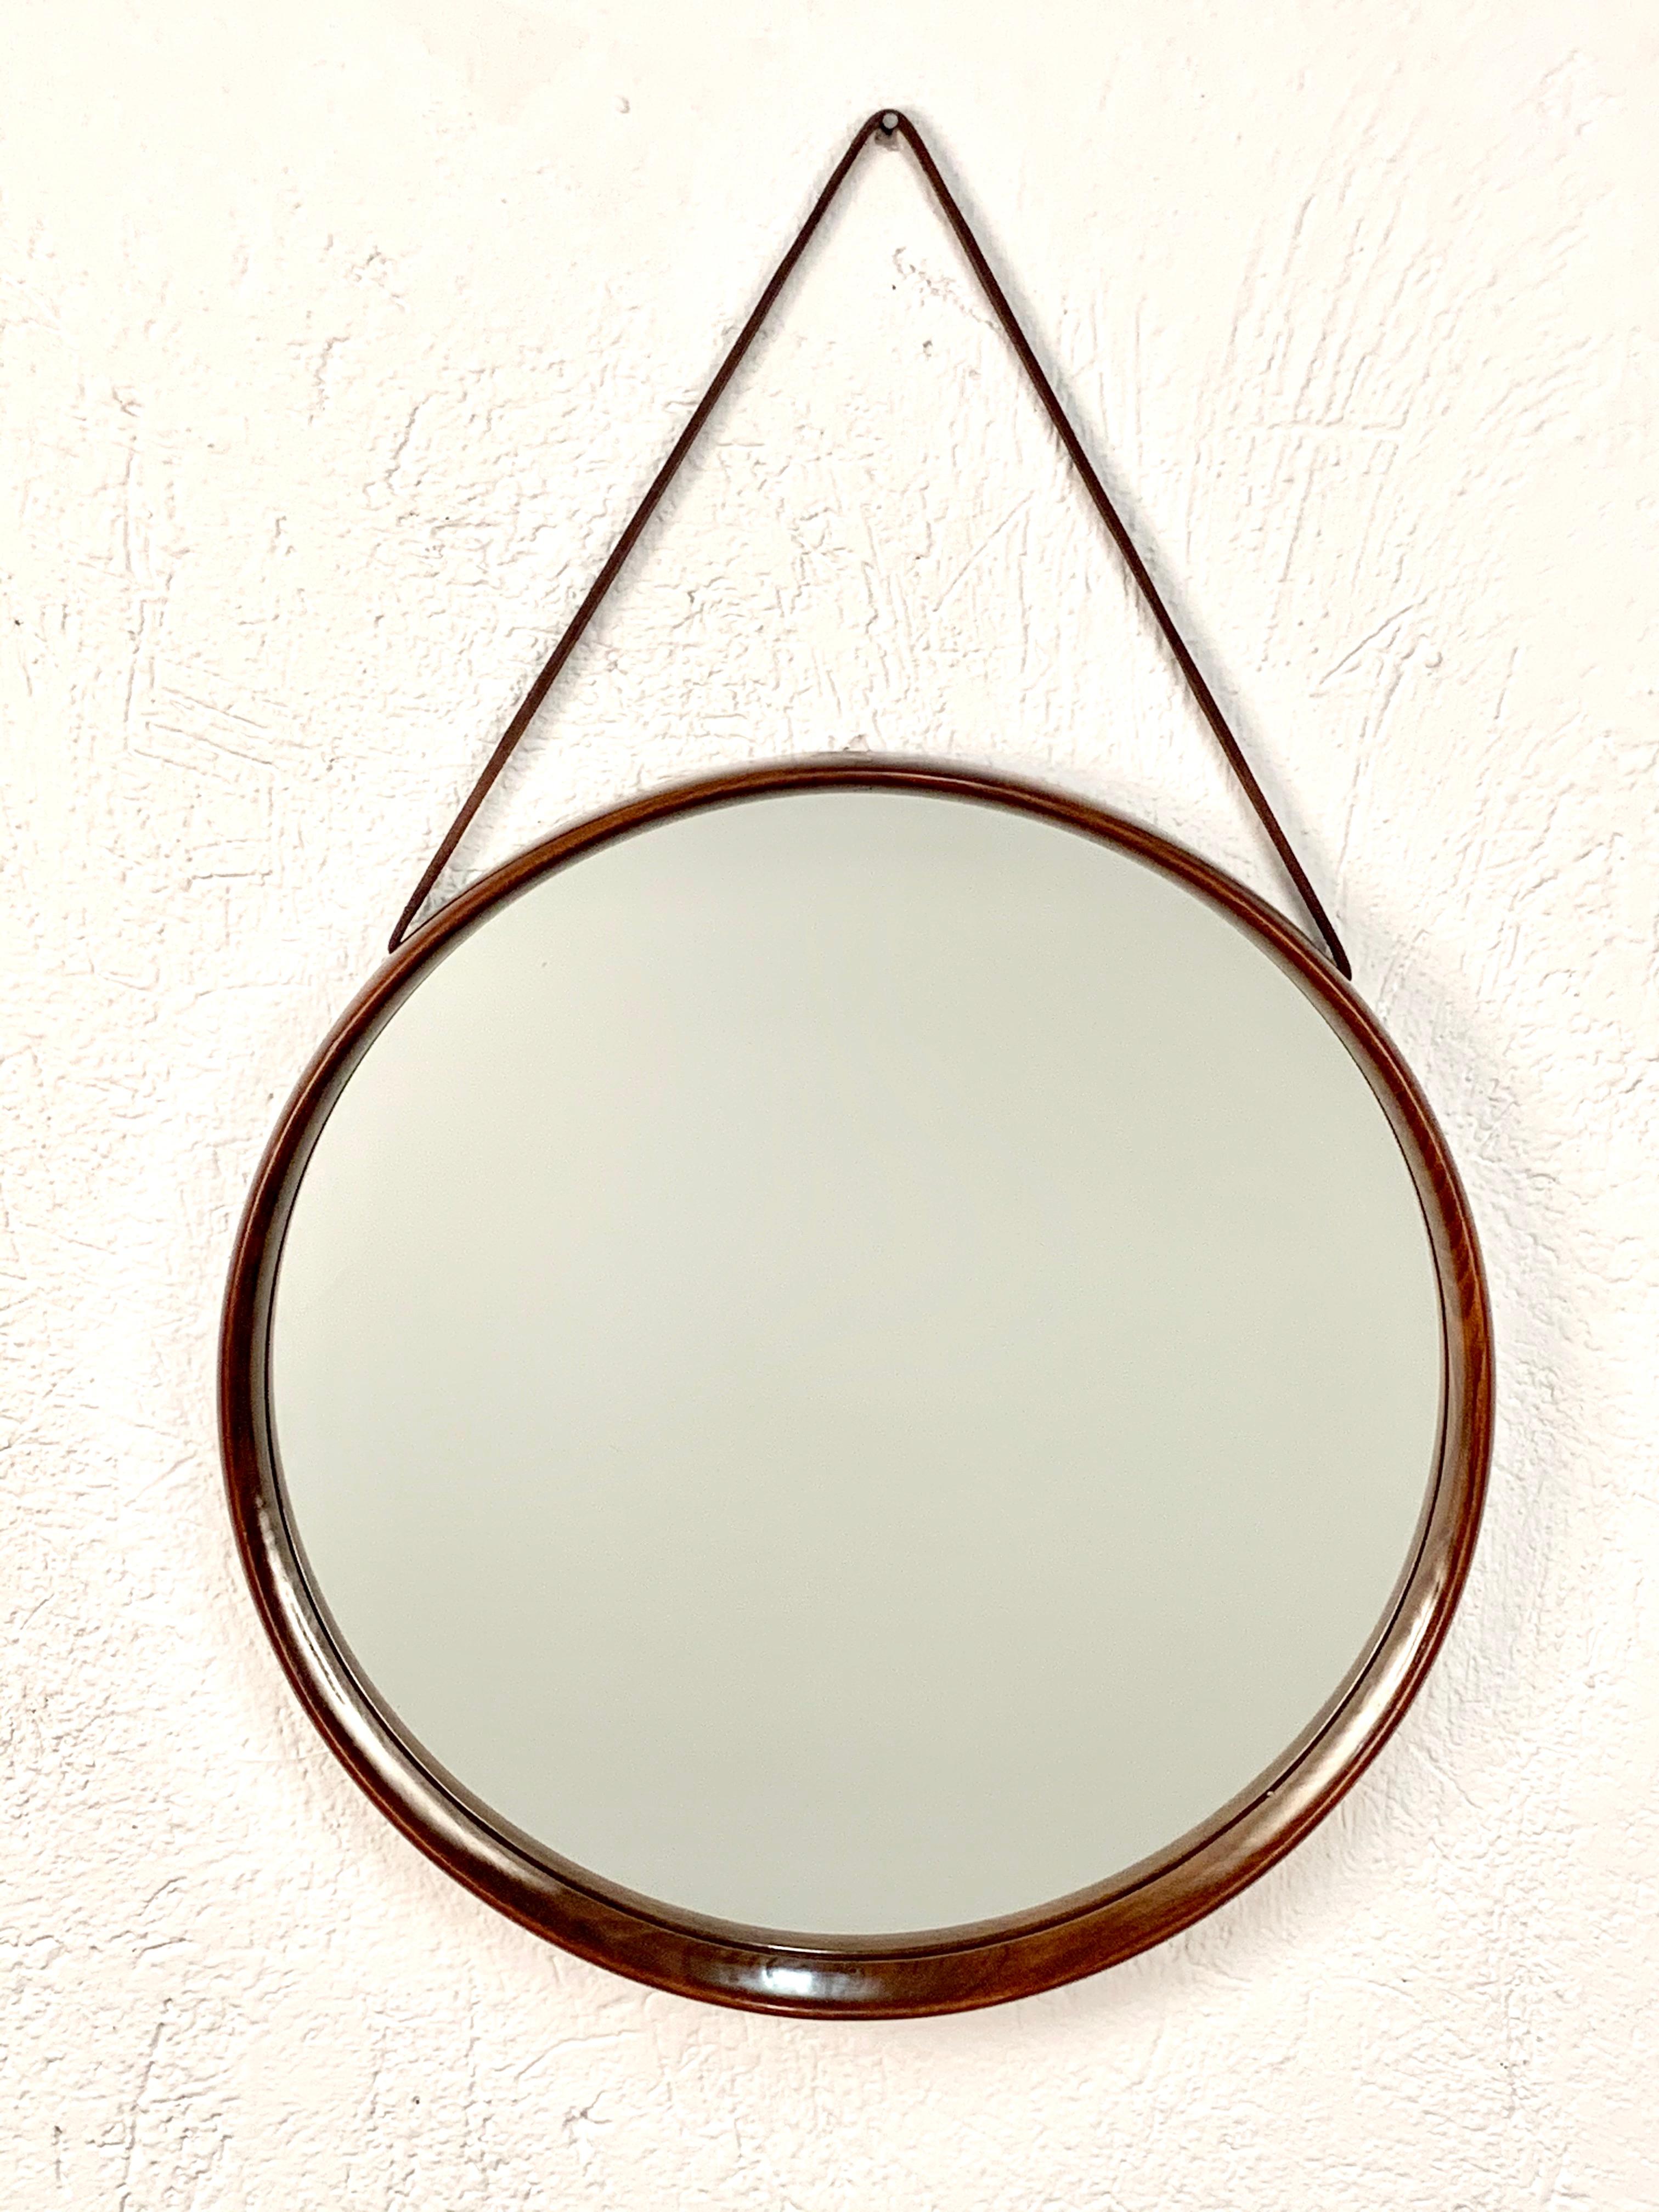 Miroir suédois de Uno & Östen Kristiansson pour Luxus en teck avec une sangle de suspension en cuir. 

Le cadre, qui entoure le verre, est constitué de différentes pièces de bois entrelacées les unes aux autres, ce qui crée une belle variété de